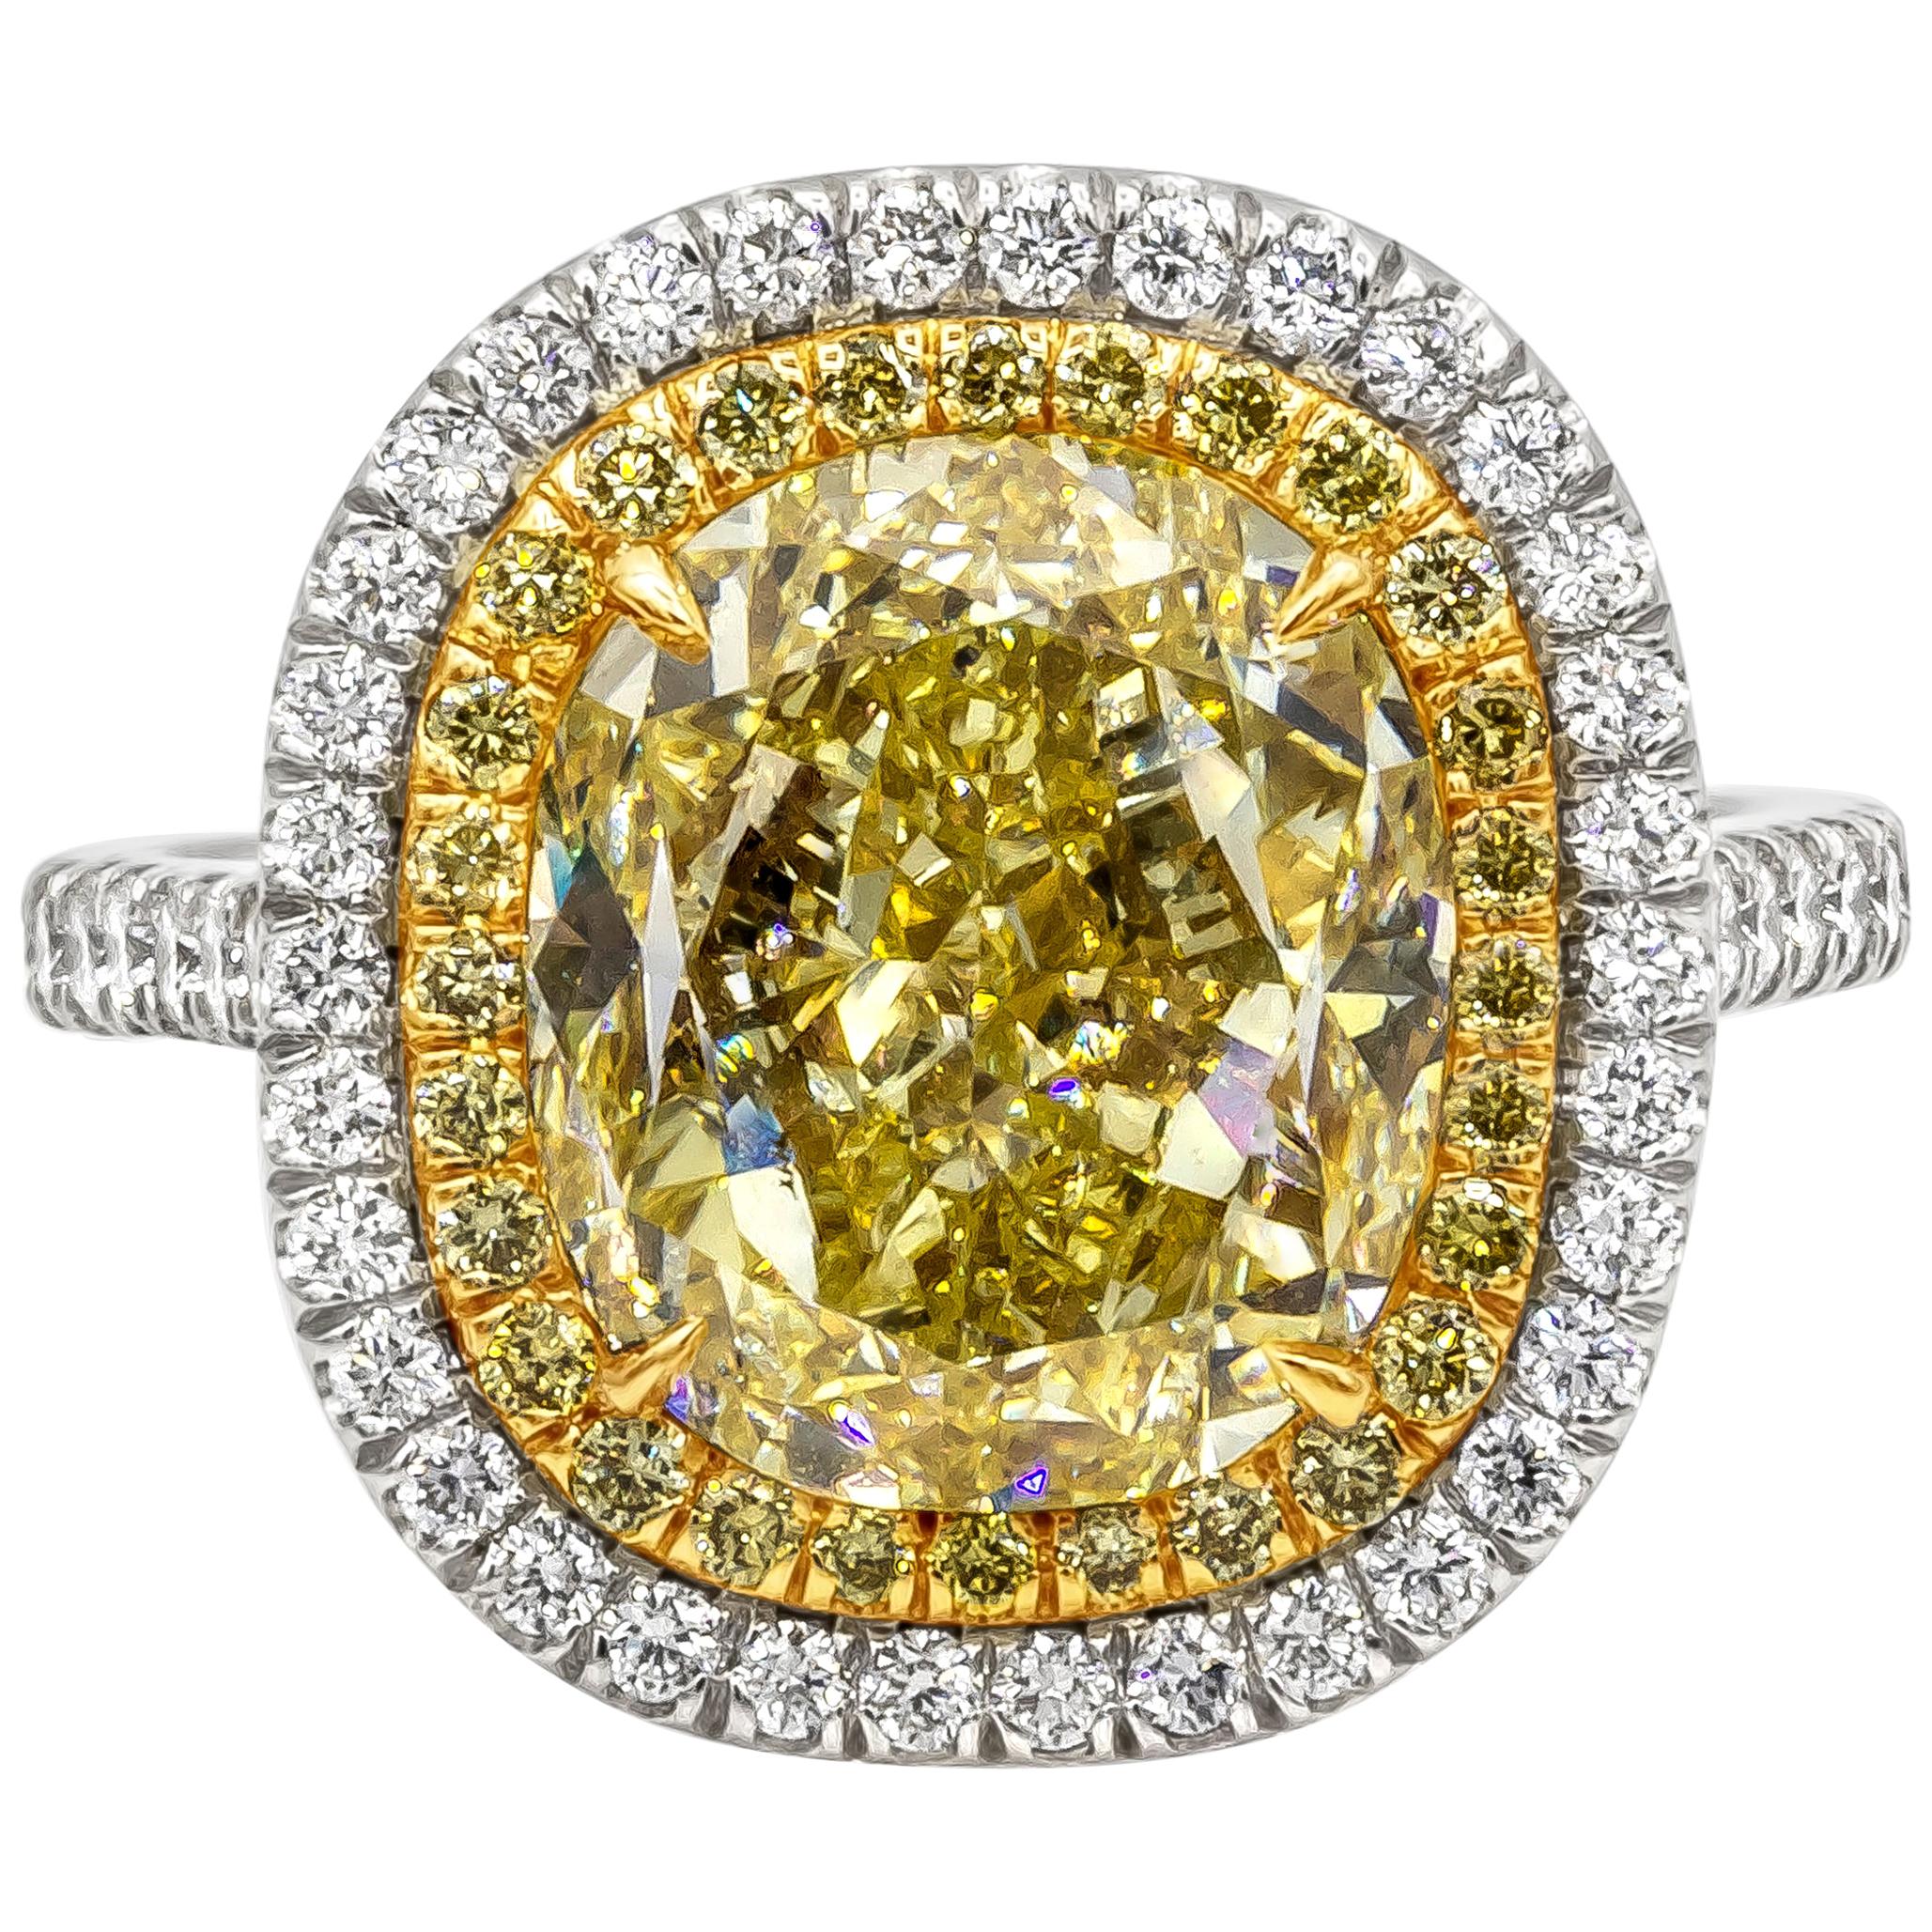 Verlobungsring mit GIA-zertifiziertem 7,06 Karat gelbem Diamanten im Ovalschliff mit doppeltem Halo